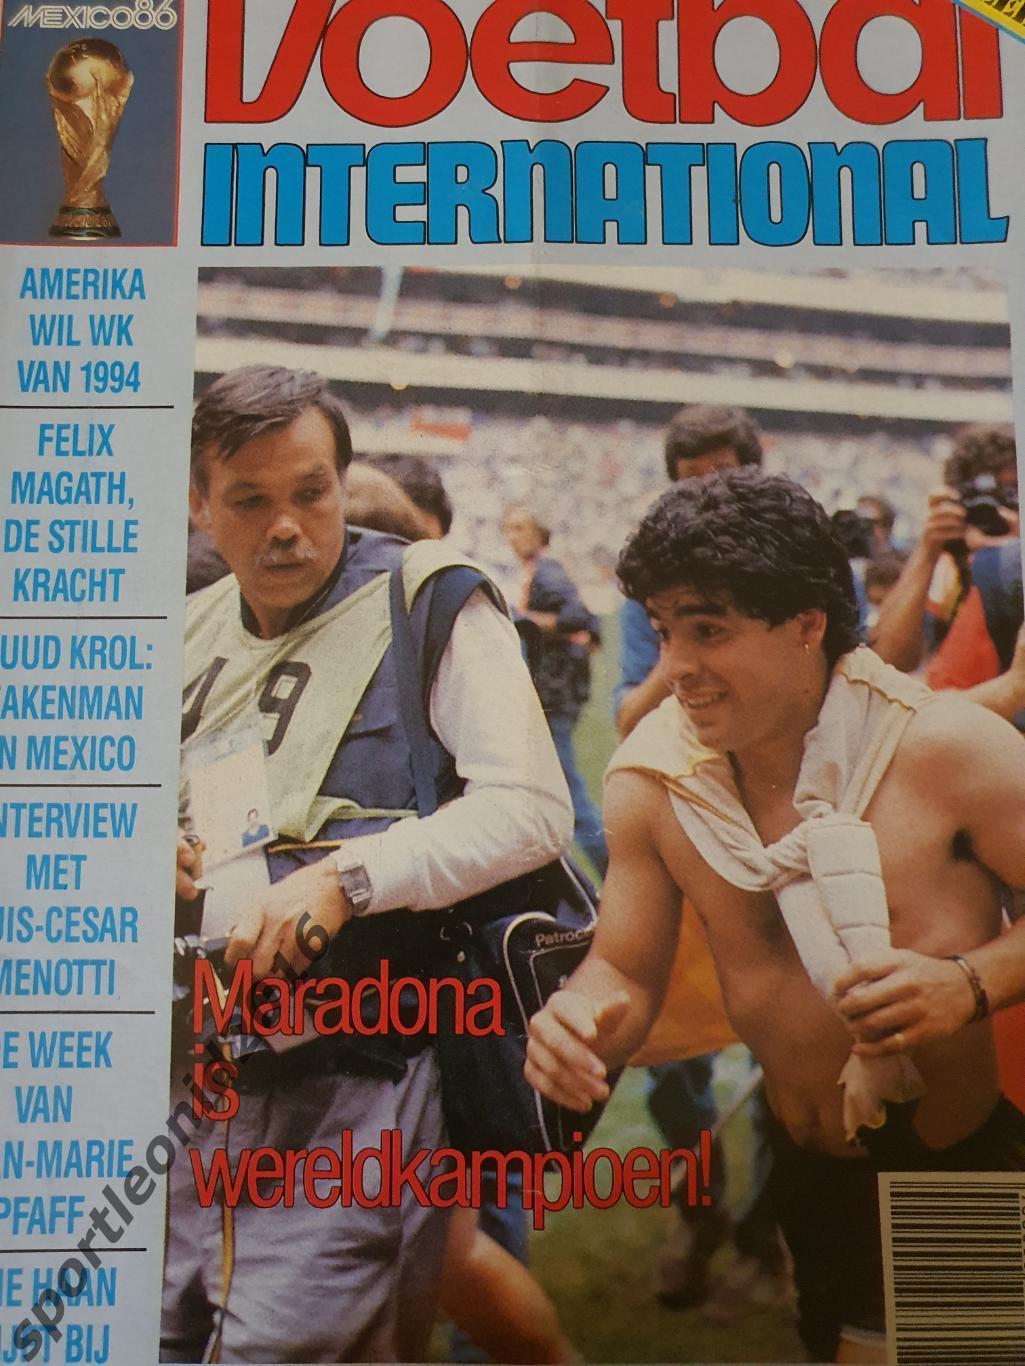 Voetbal International 1986.3 топ выпуска.Итоговые к ЧМ-86.4 5